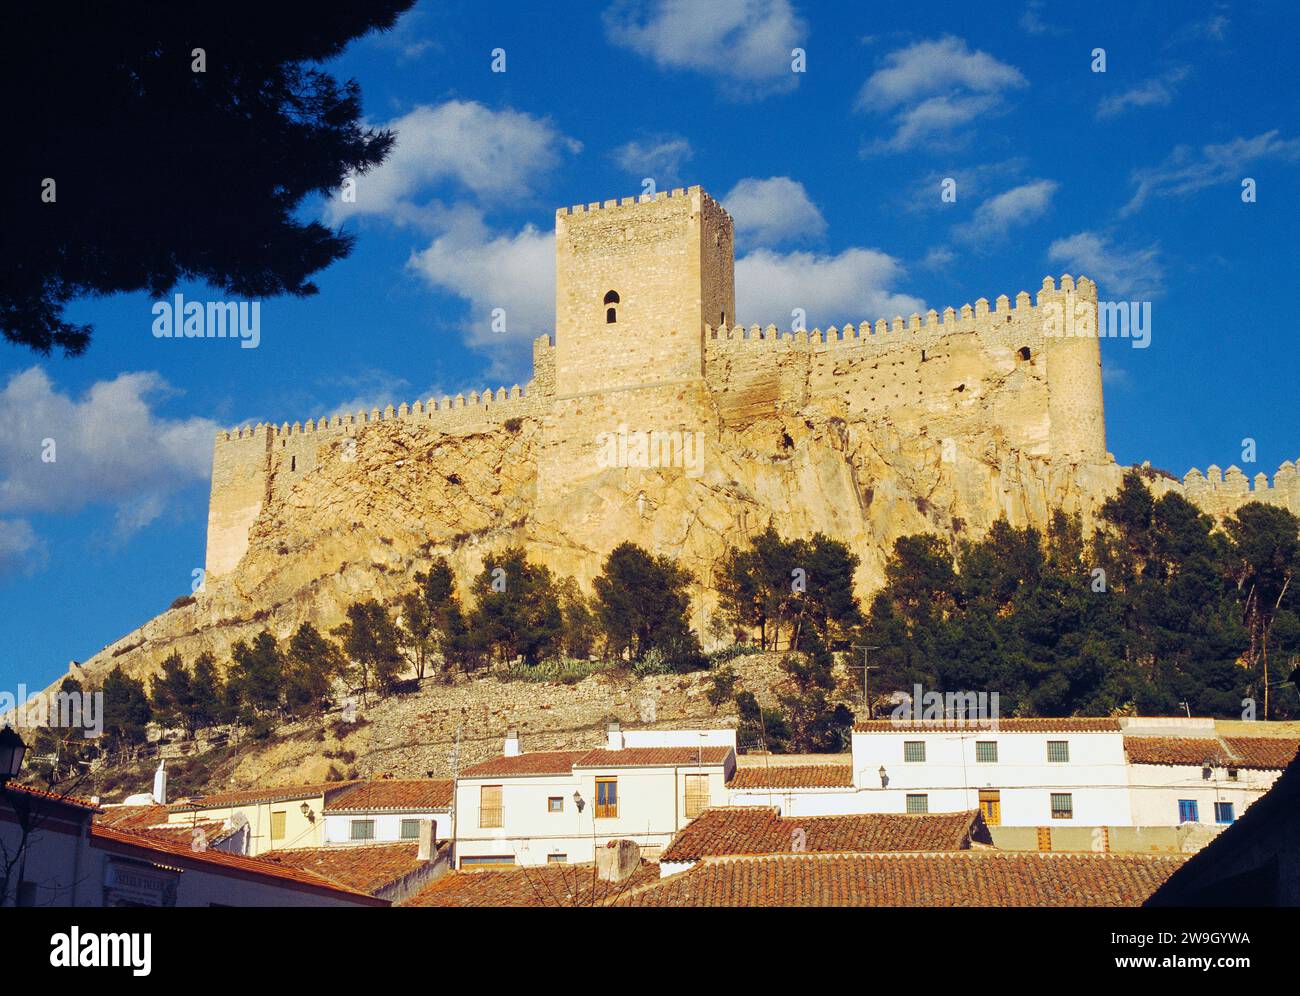 Castle. Almansa, Albacete province, Castilla La Mancha, Spain. Stock Photo